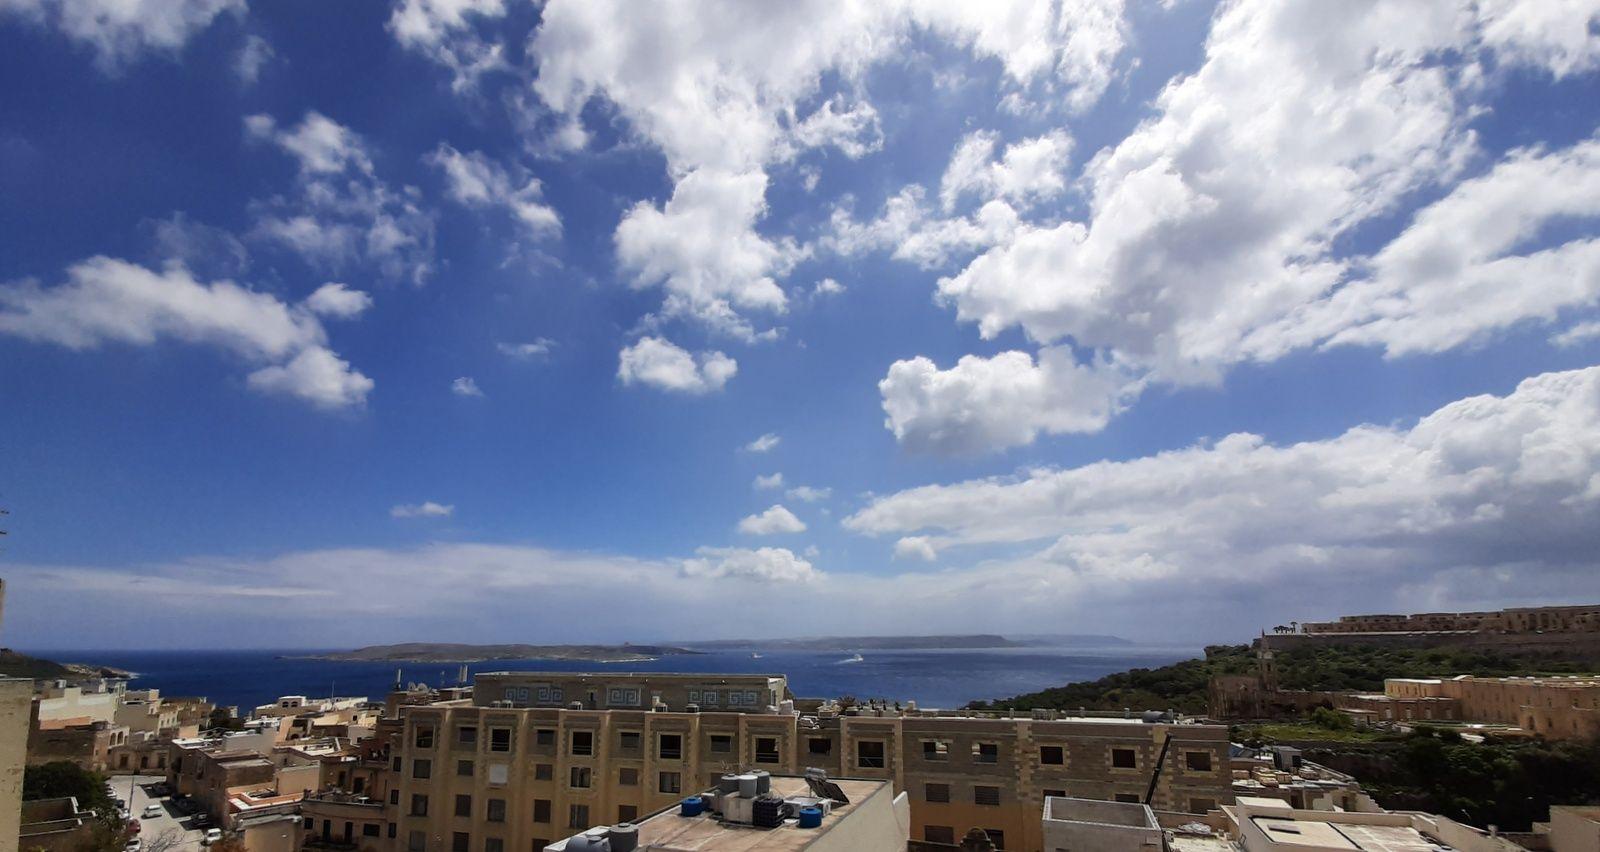 Ferienwohnung für 2 Personen ca. 60 m² i Ferienwohnung in Gozo